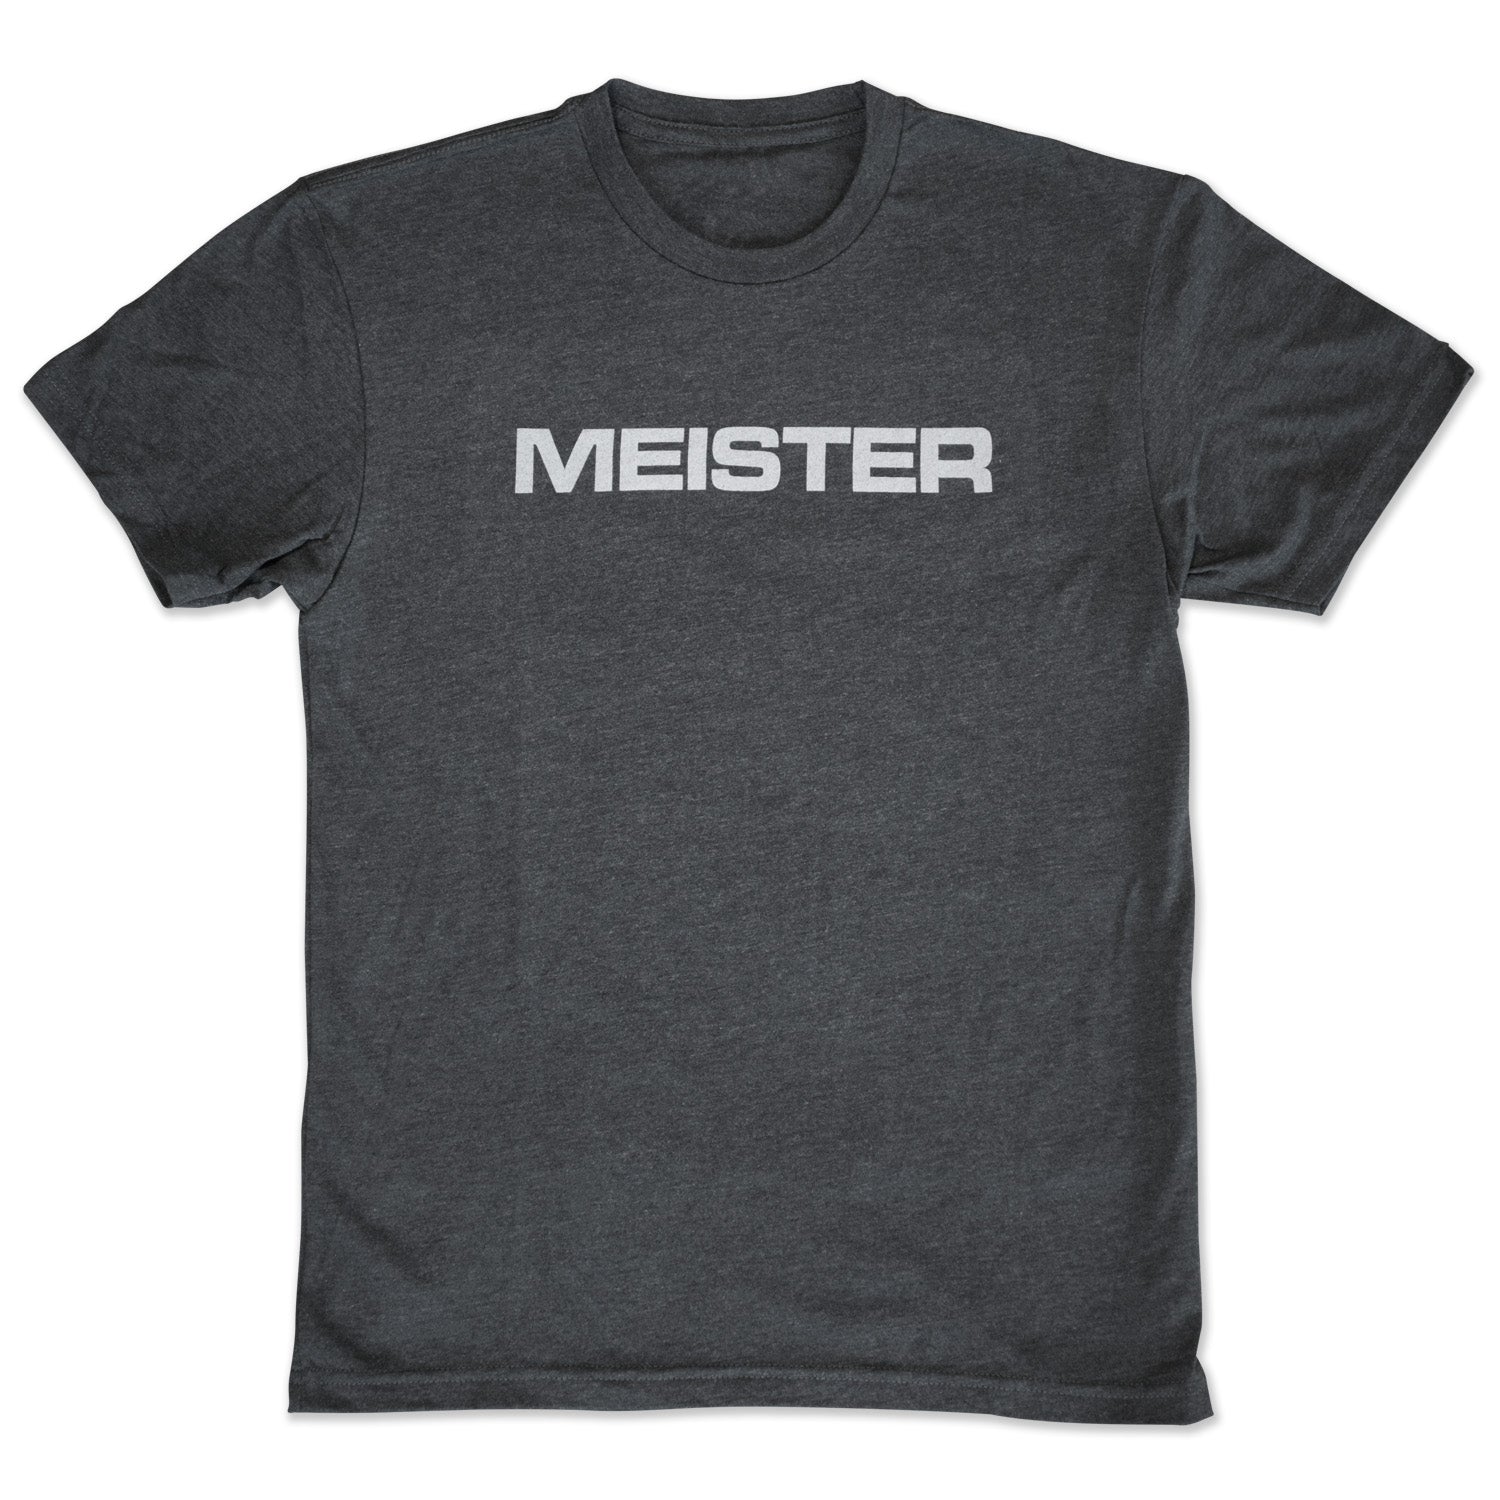 Meister Men's Tri-Blend T-Shirt - Vintage Black